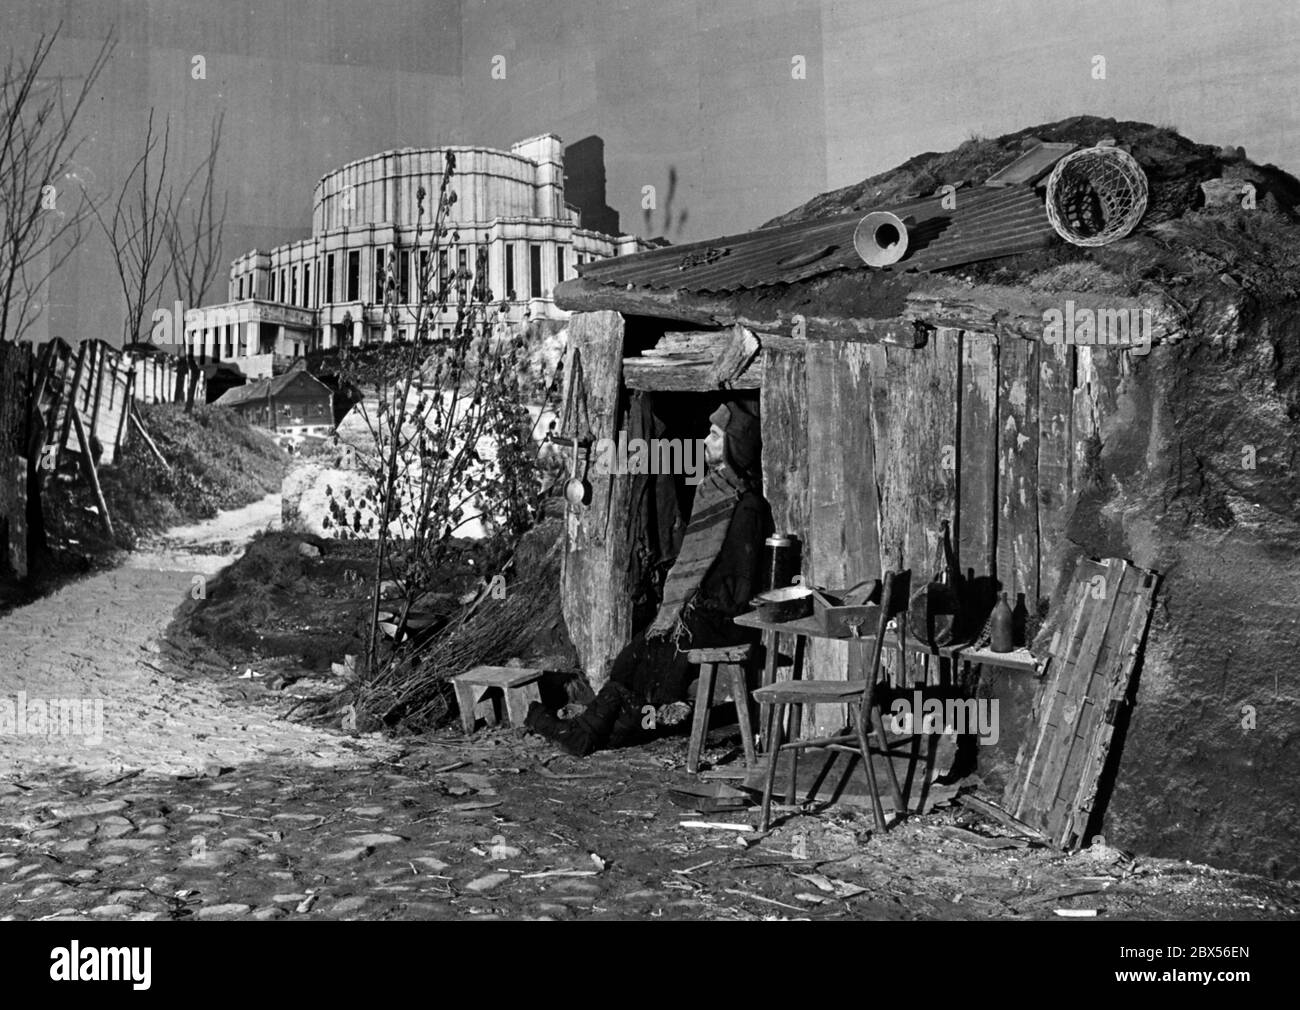 Blick auf die Ausstellung "das sowjetische Paradies" im Berliner Lustgarten: Ein Mann steht vor seiner armen Hütte. Daneben ist ein Bild einer Oper in Minsk, die die Kontraste propagandistisch symbolisieren soll. Stockfoto